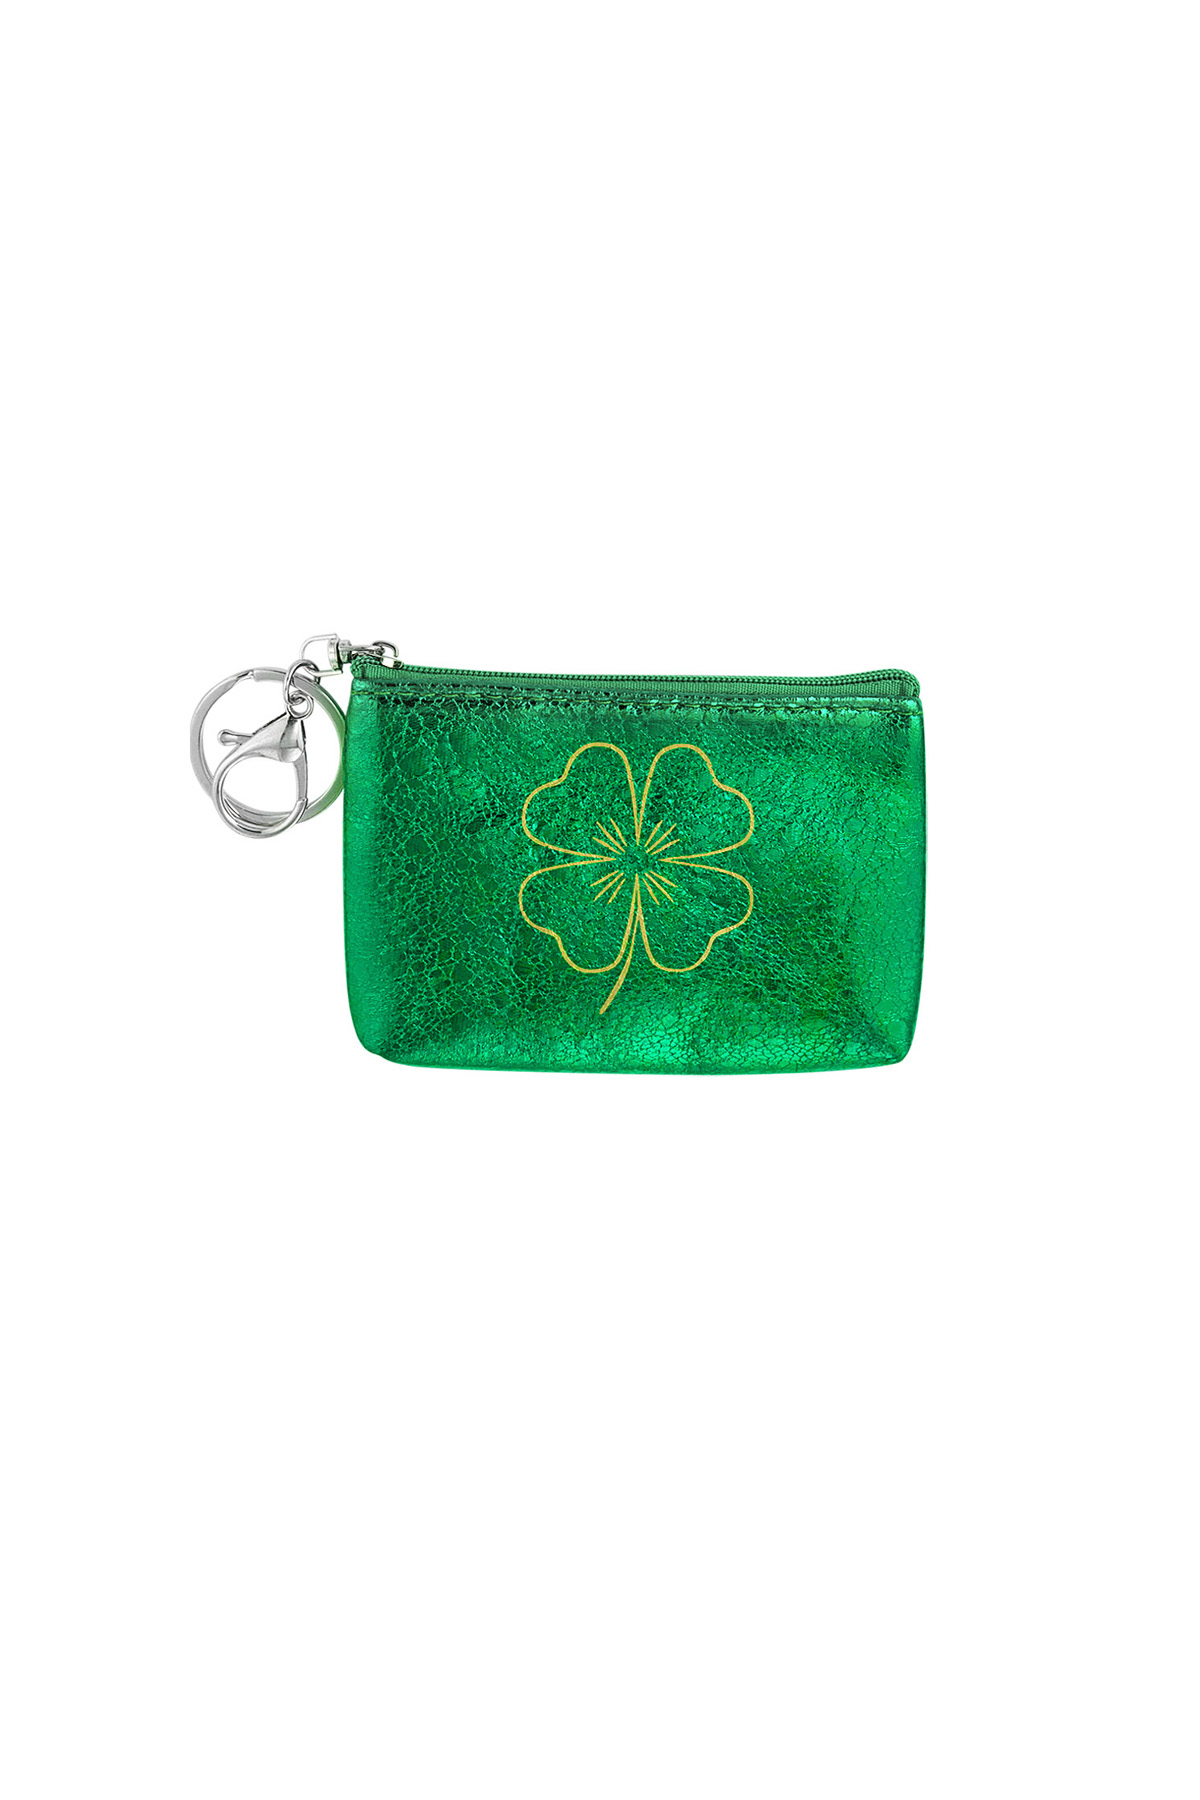 Anahtarlık cüzdan metalik yonca - yeşil